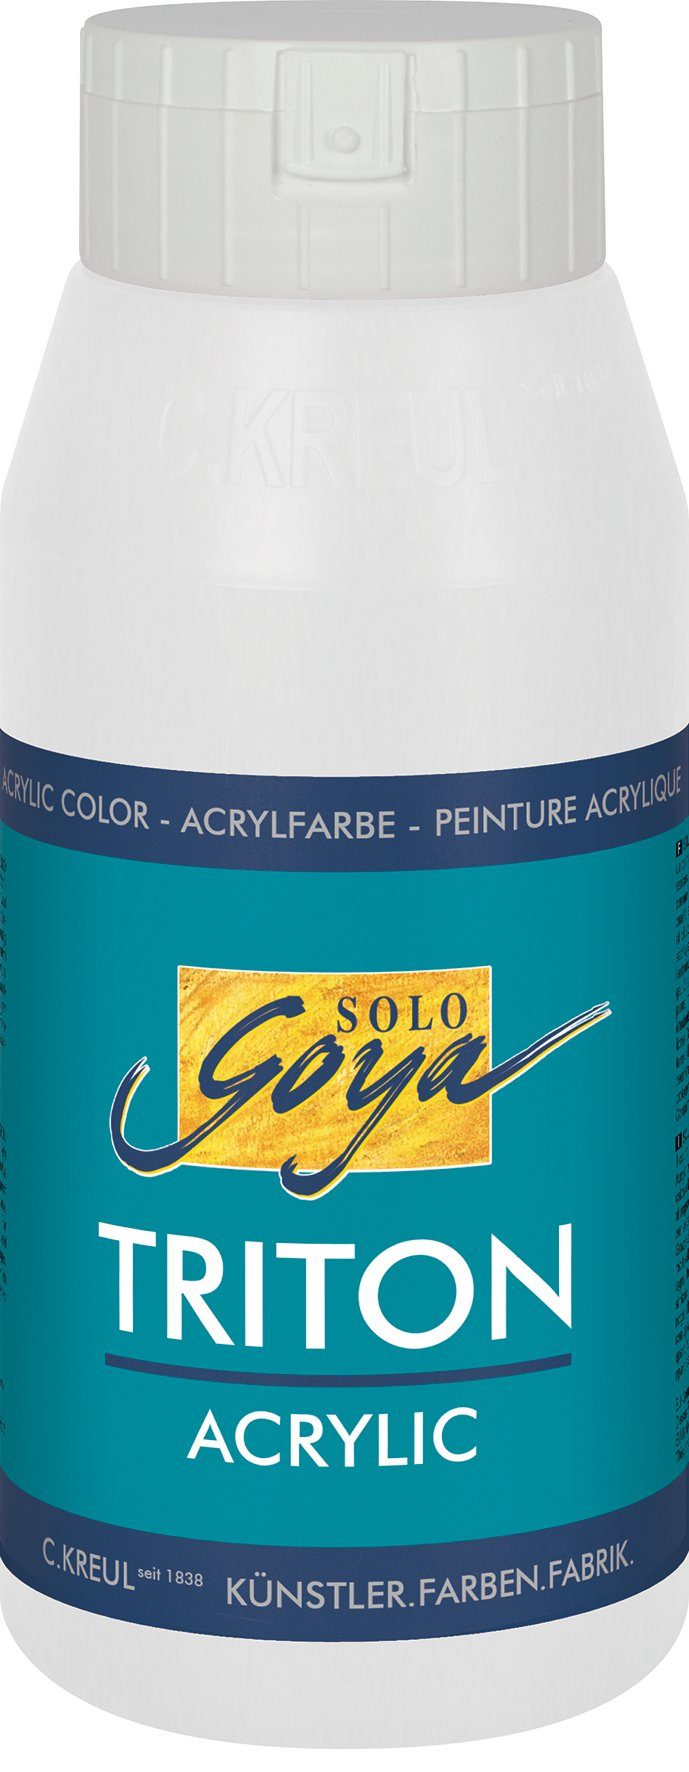 Kreul Triton Acrylic, ml Weiß Solo Acrylfarbe 750 Goya